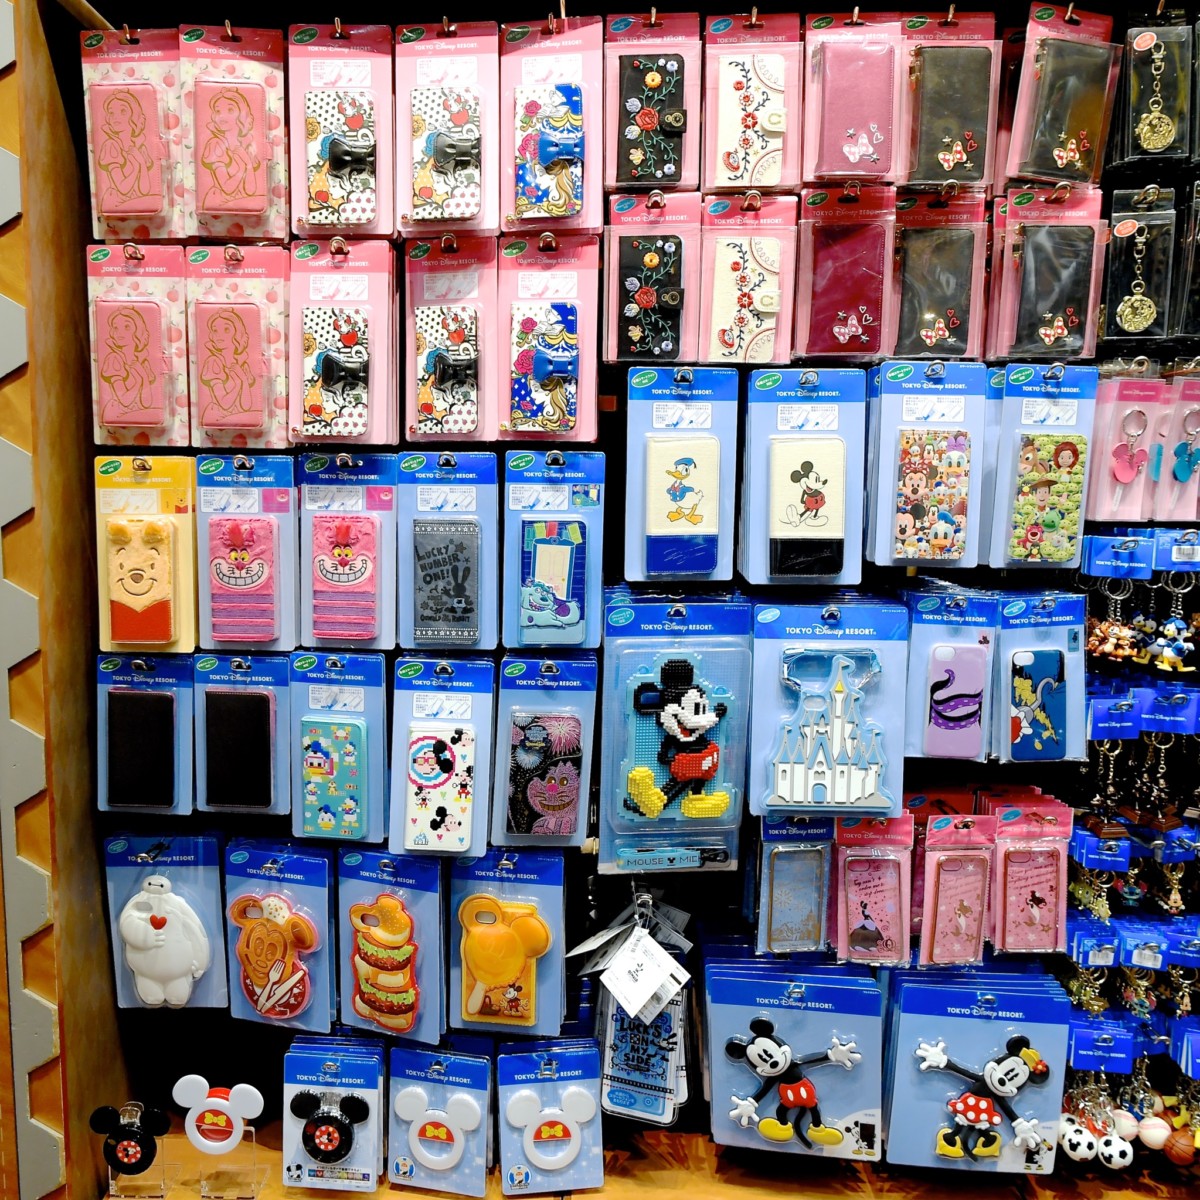 ホーンテッドマンション壁紙iphone8ケース Iphoneに加え多機種対応手帳型も続々登場 東京ディズニーランド 18春夏 スマートフォンケースまとめ